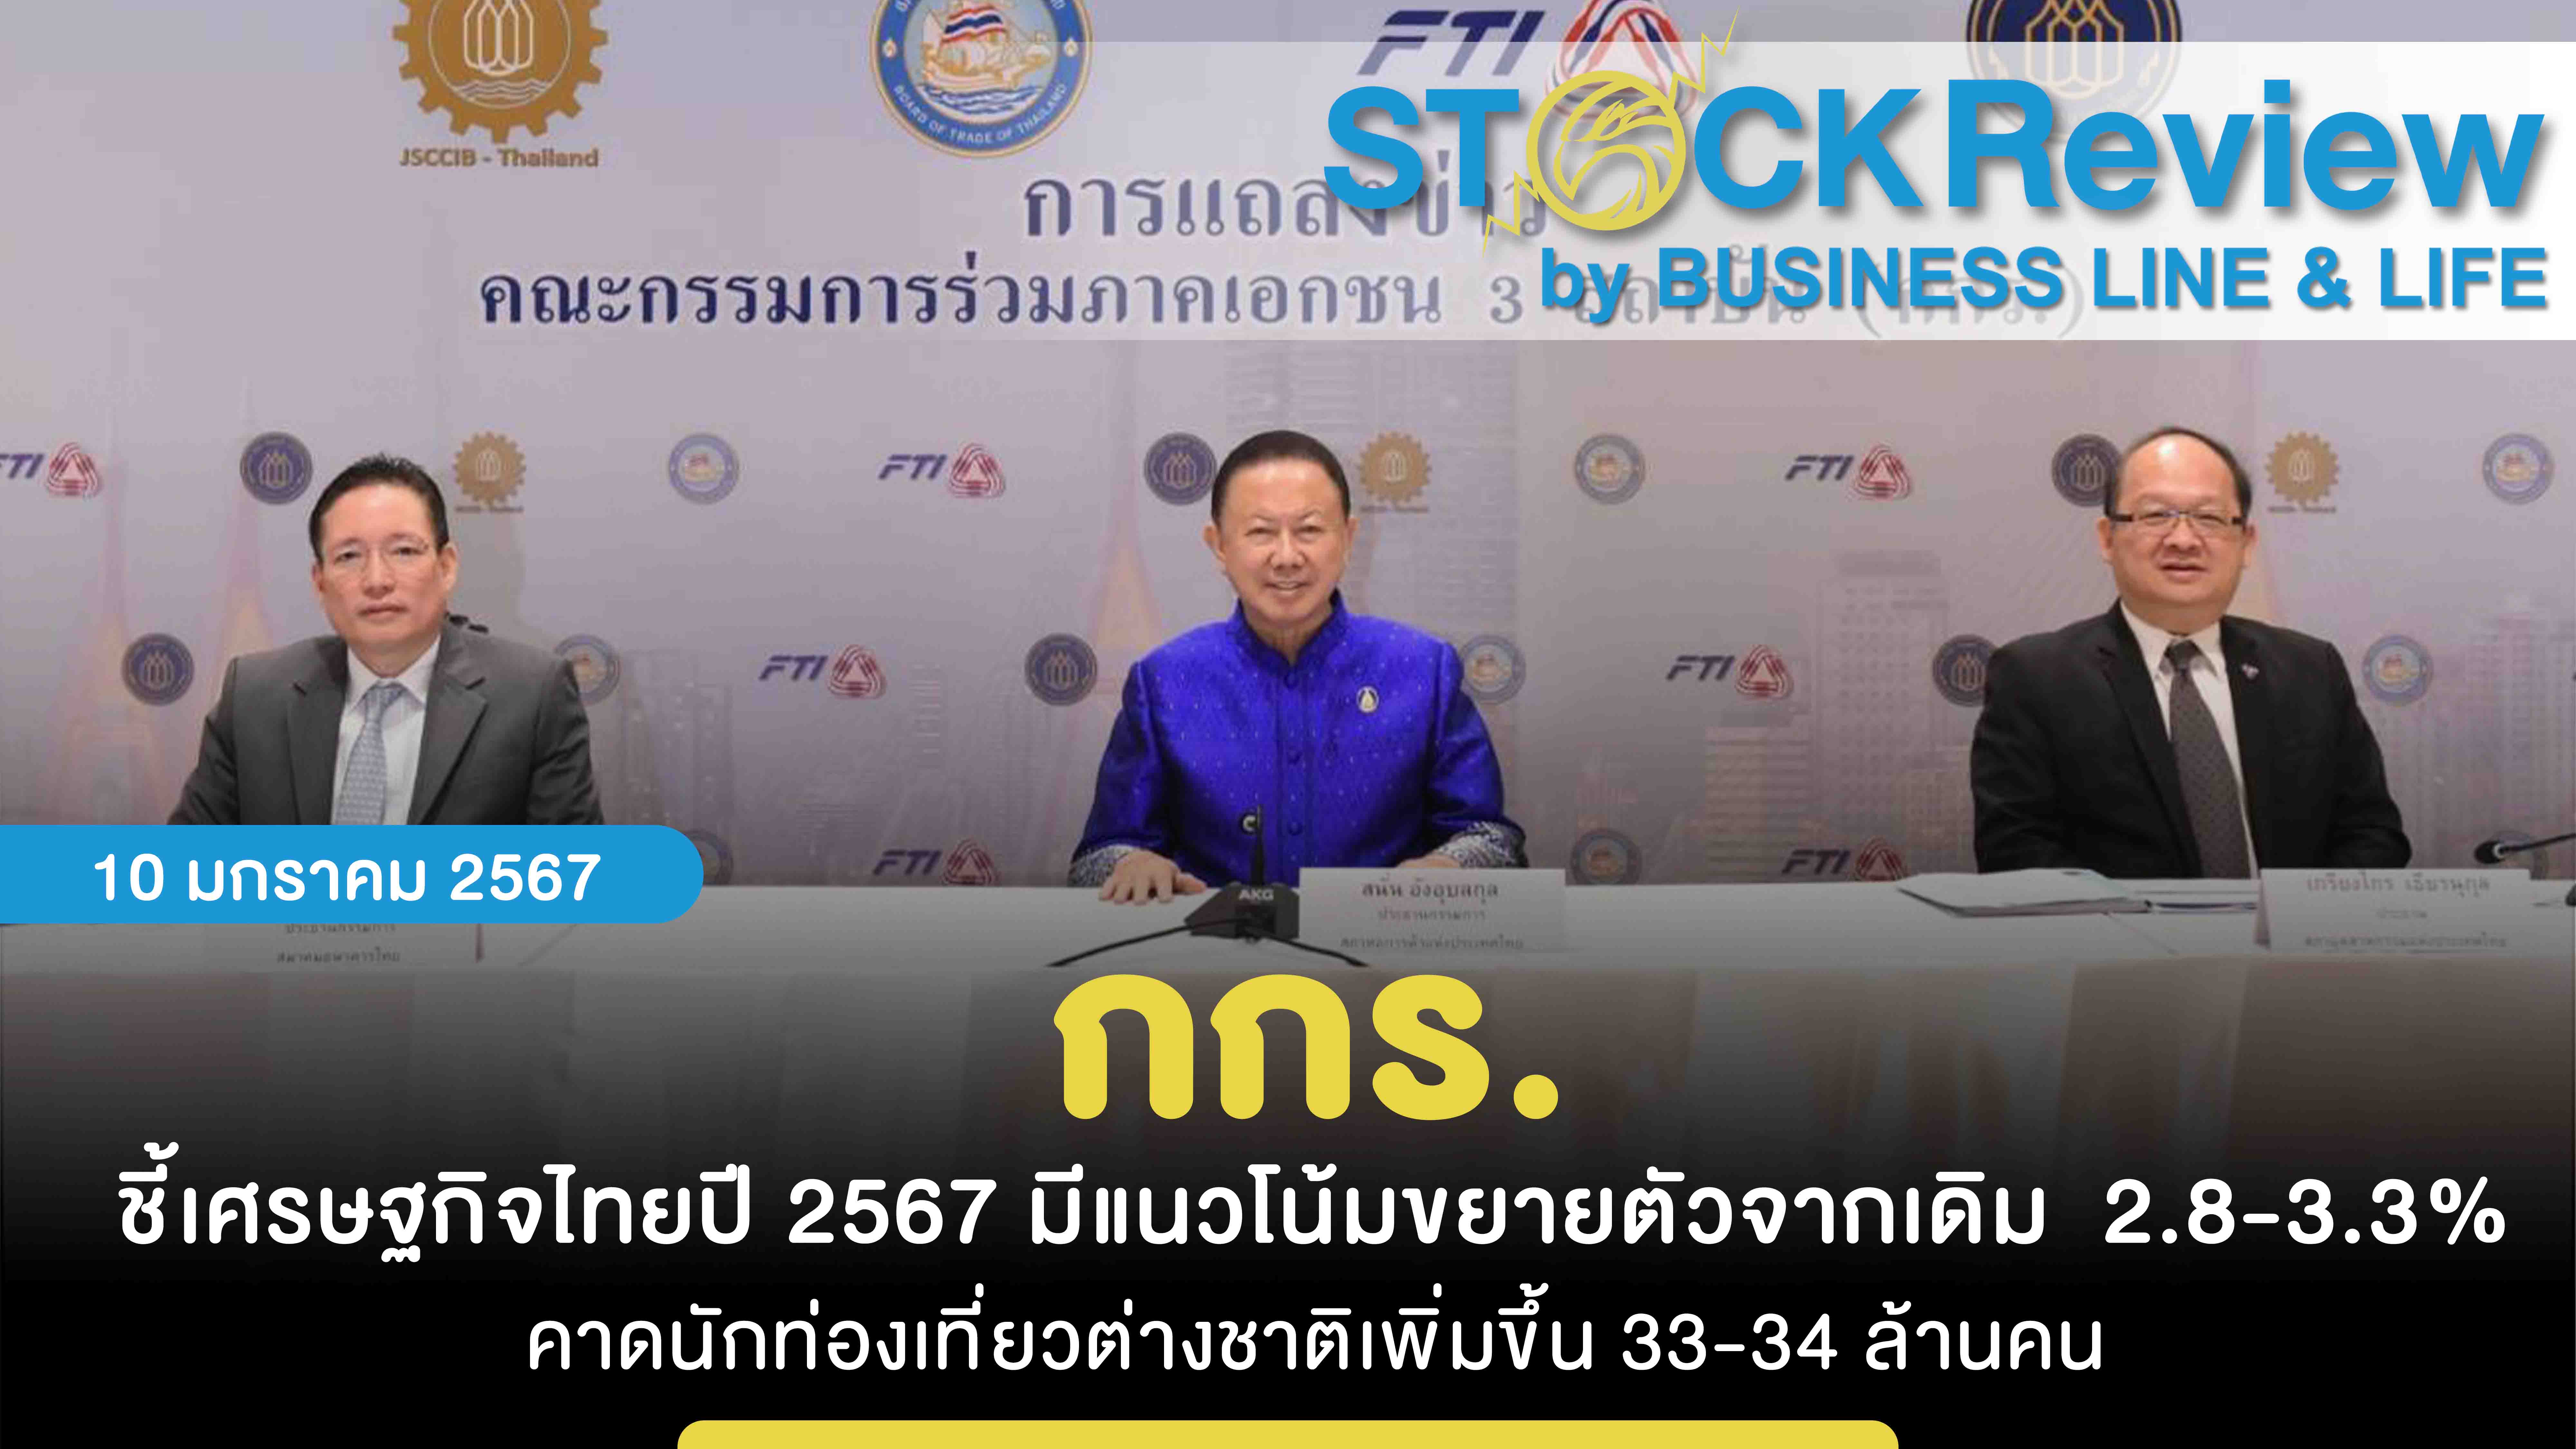 กกร. ชี้เศรษฐกิจไทยปี 2567 มีแนวโน้มขยายตัวจากเดิม  2.8-3.3% คาดนักท่องเที่ยวต่างชาติเพิ่มขึ้น 33-34 ล้านคน